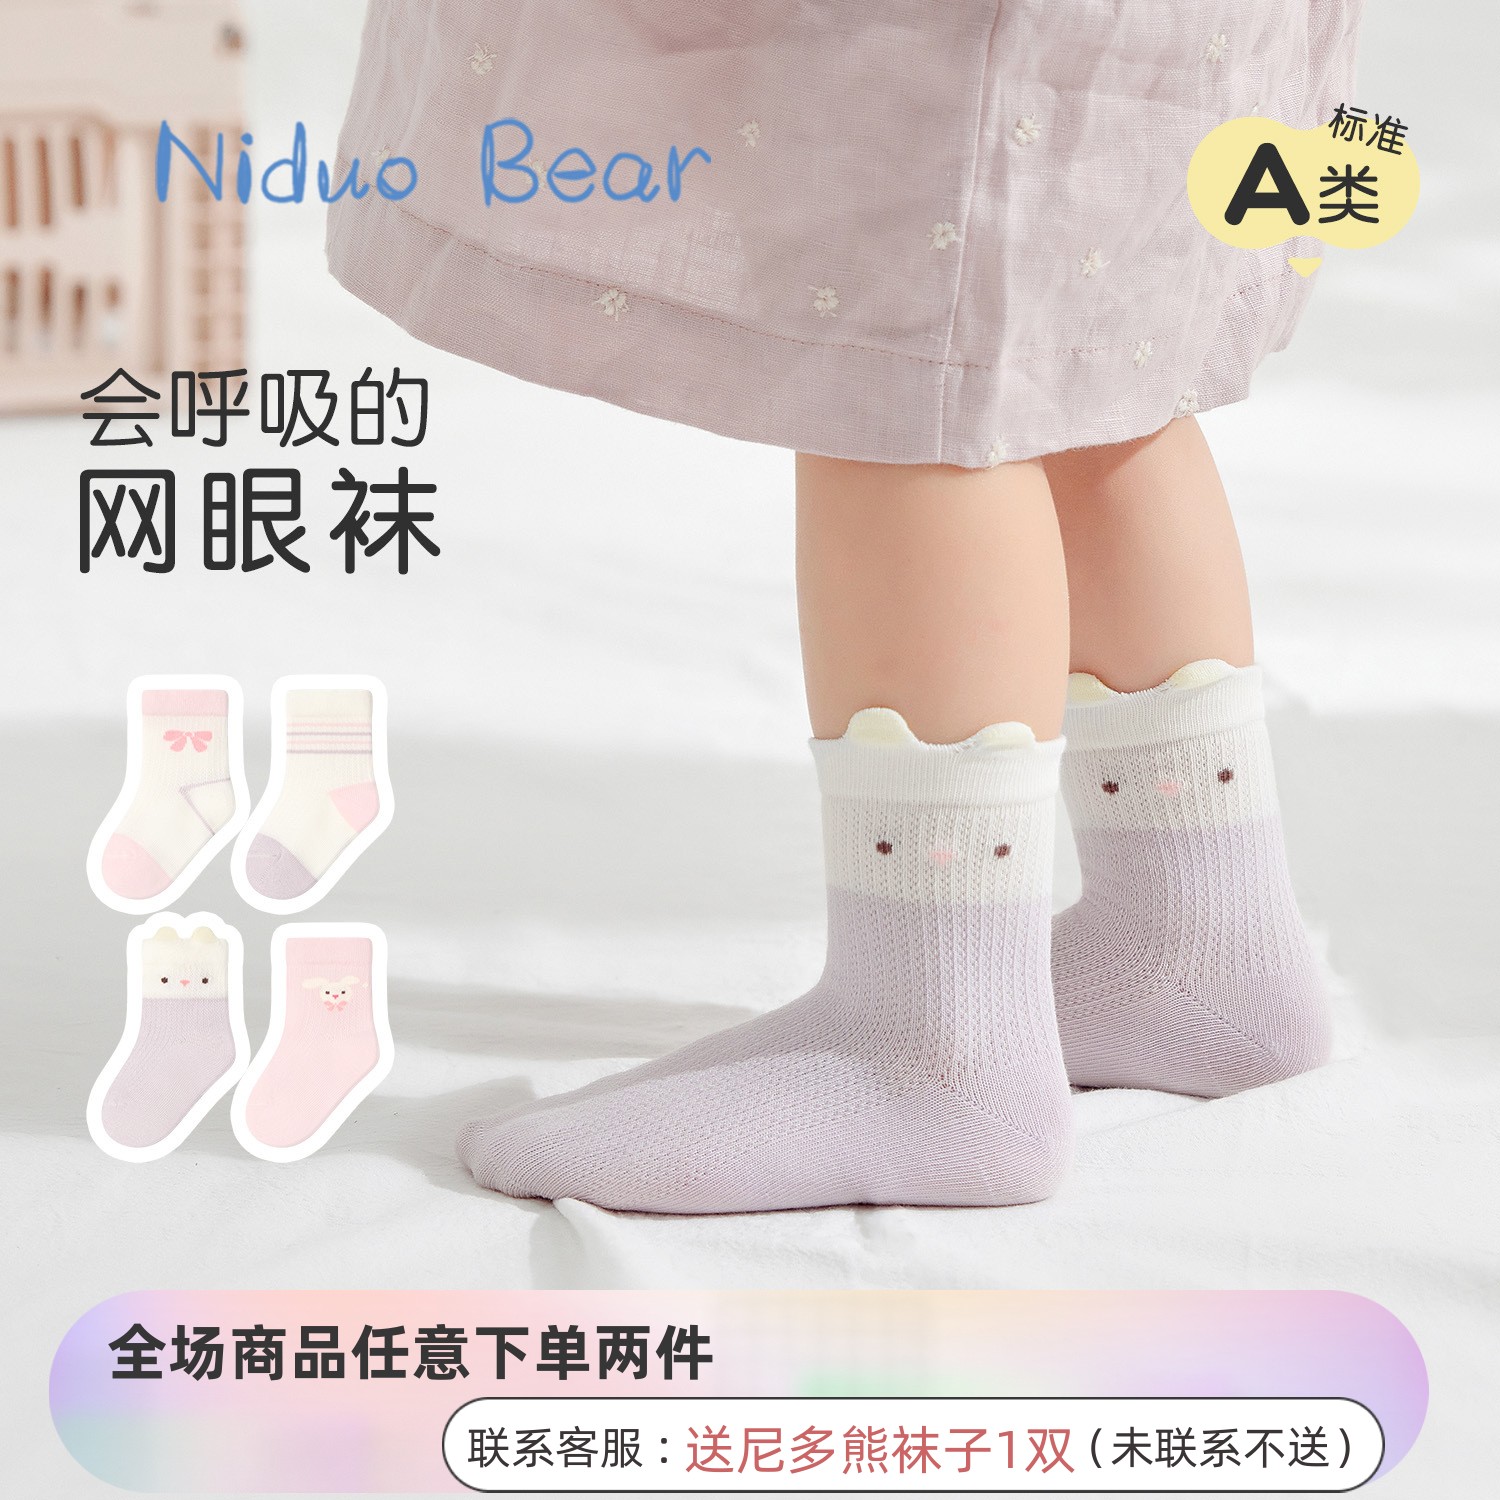 尼多熊女宝宝袜子春夏薄款棉袜婴儿透气网眼袜女童无骨袜儿童袜